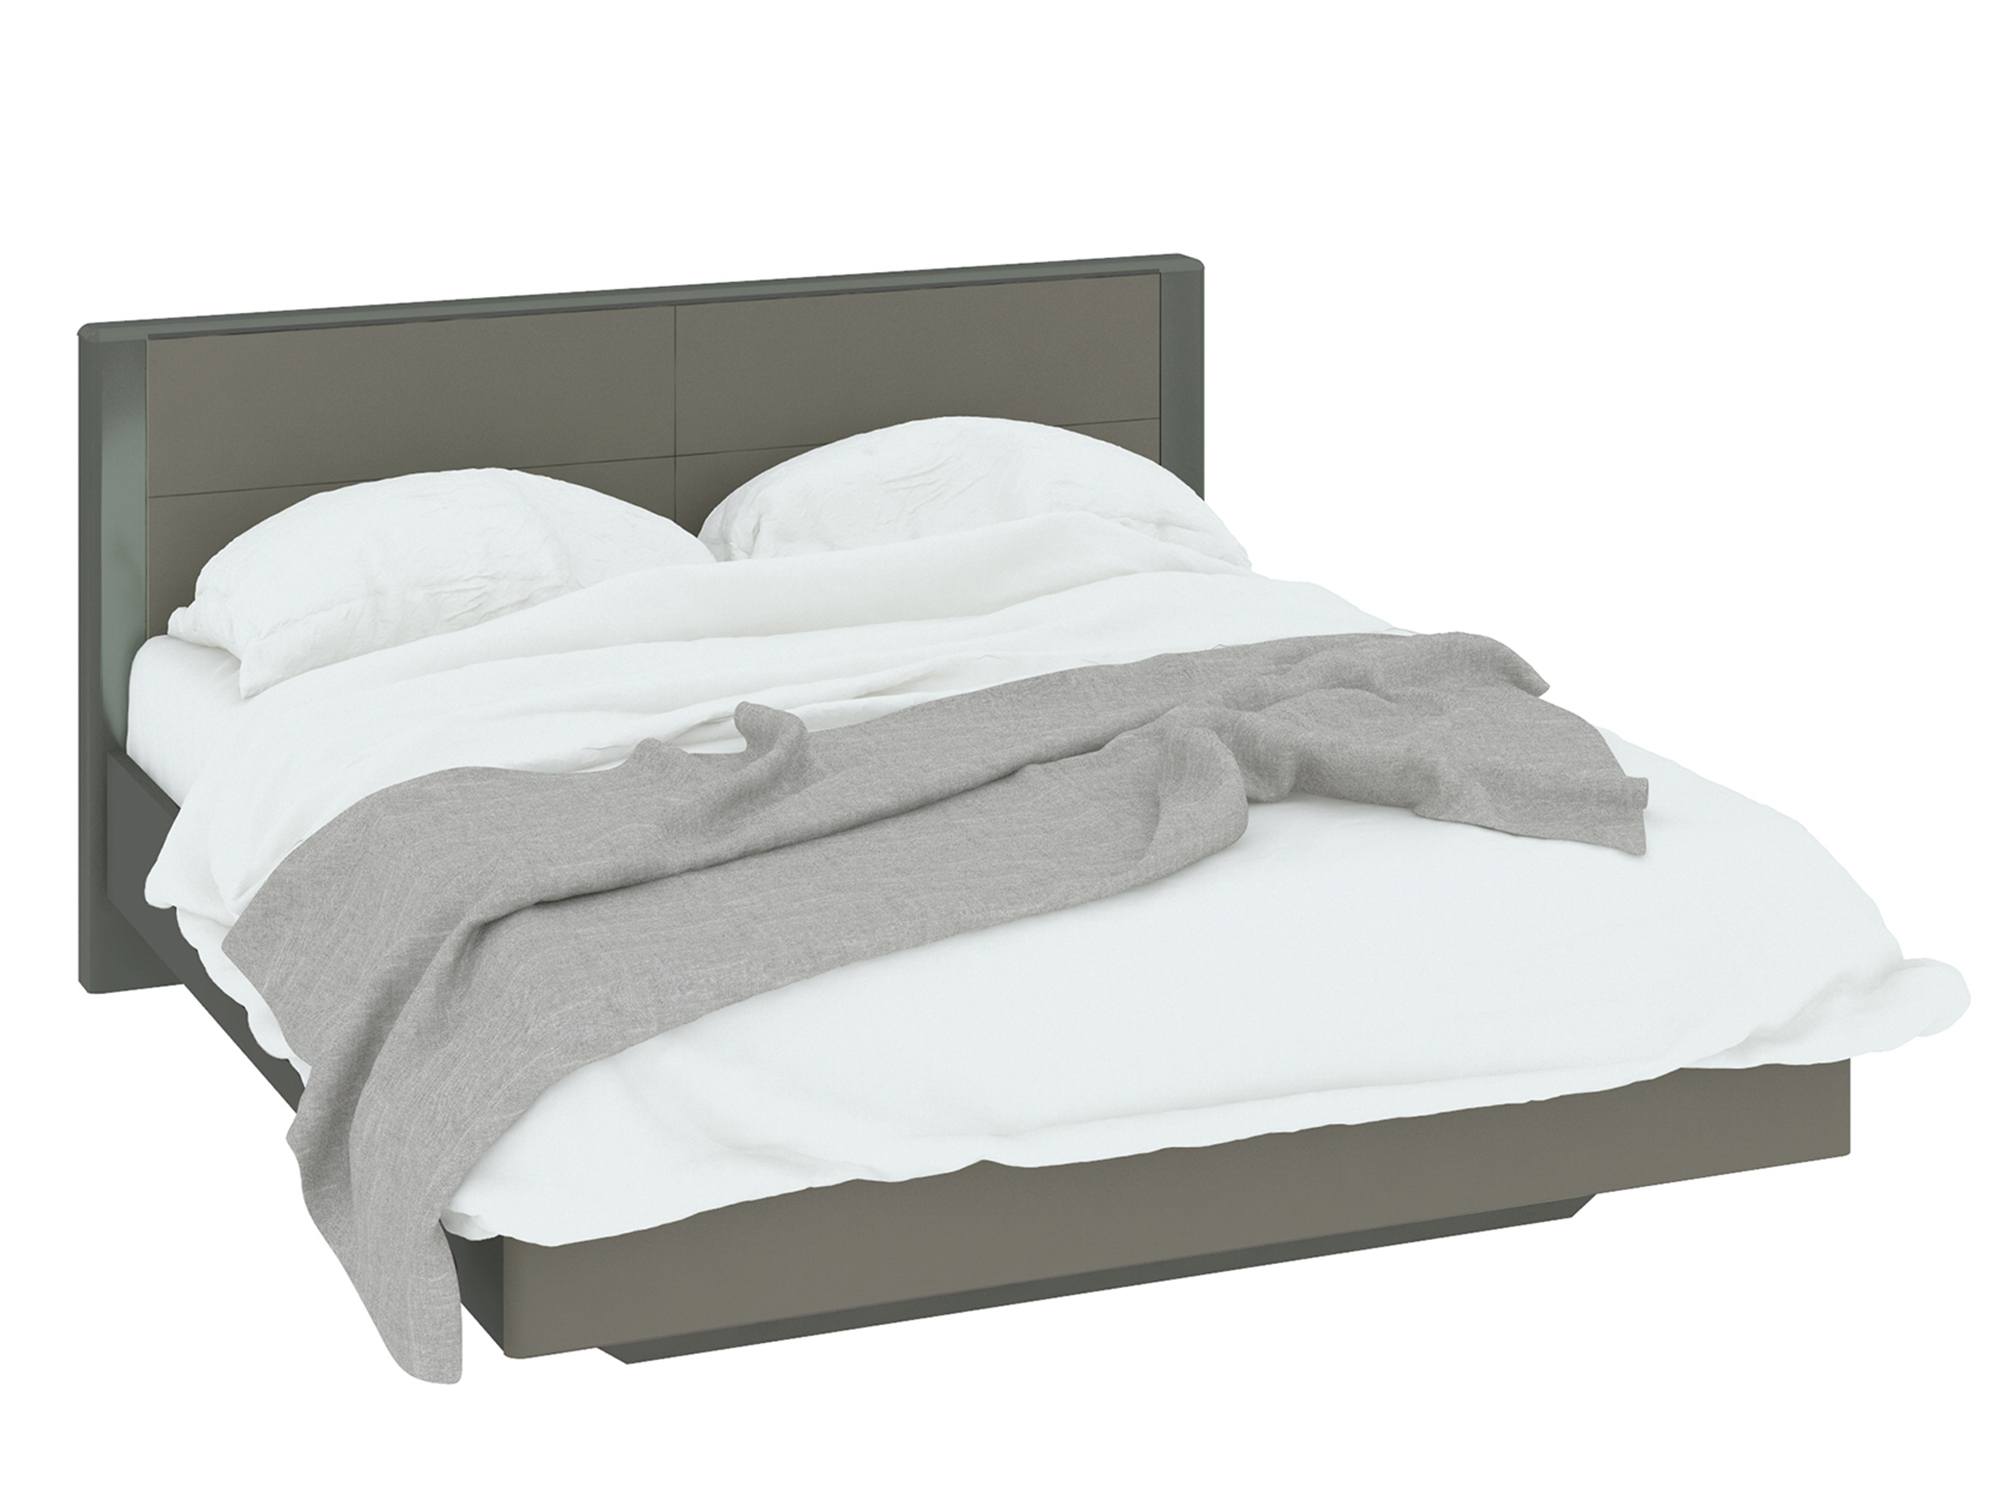 Кровать Наоми (160х200) Джут, МДФ, Пленка ПВХ, ЛДСП кровать с мягкой спинкой и пм наоми 160х200 белый лдсп кромка abs